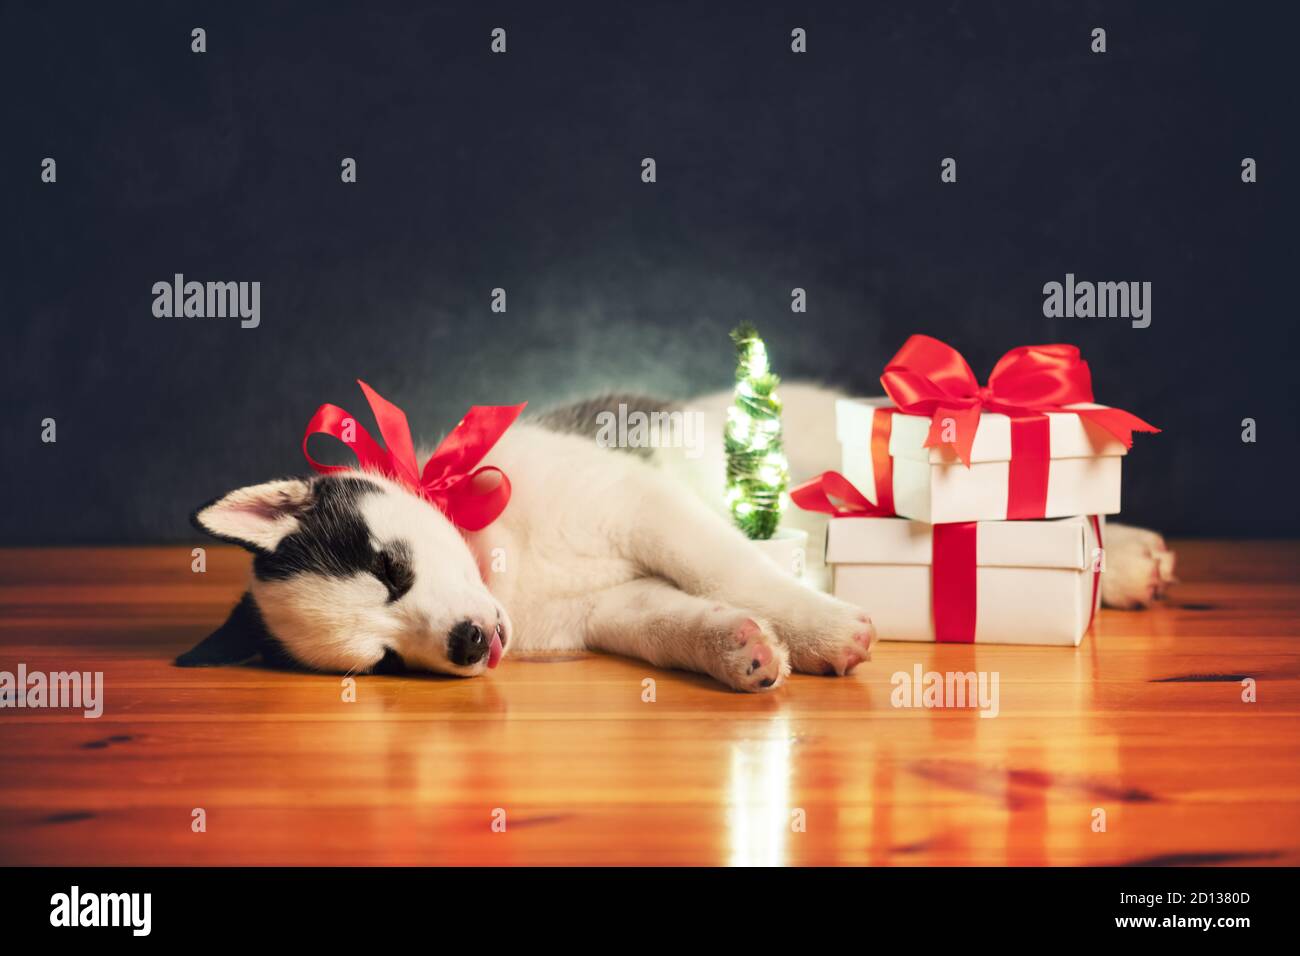 Un petit chien blanc chien chiot race husky sibérien avec noeud rouge et des boîtes-cadeaux dorment sur un sol en bois. Parfait cadeau d'anniversaire et de Noël pour votre enfant Banque D'Images